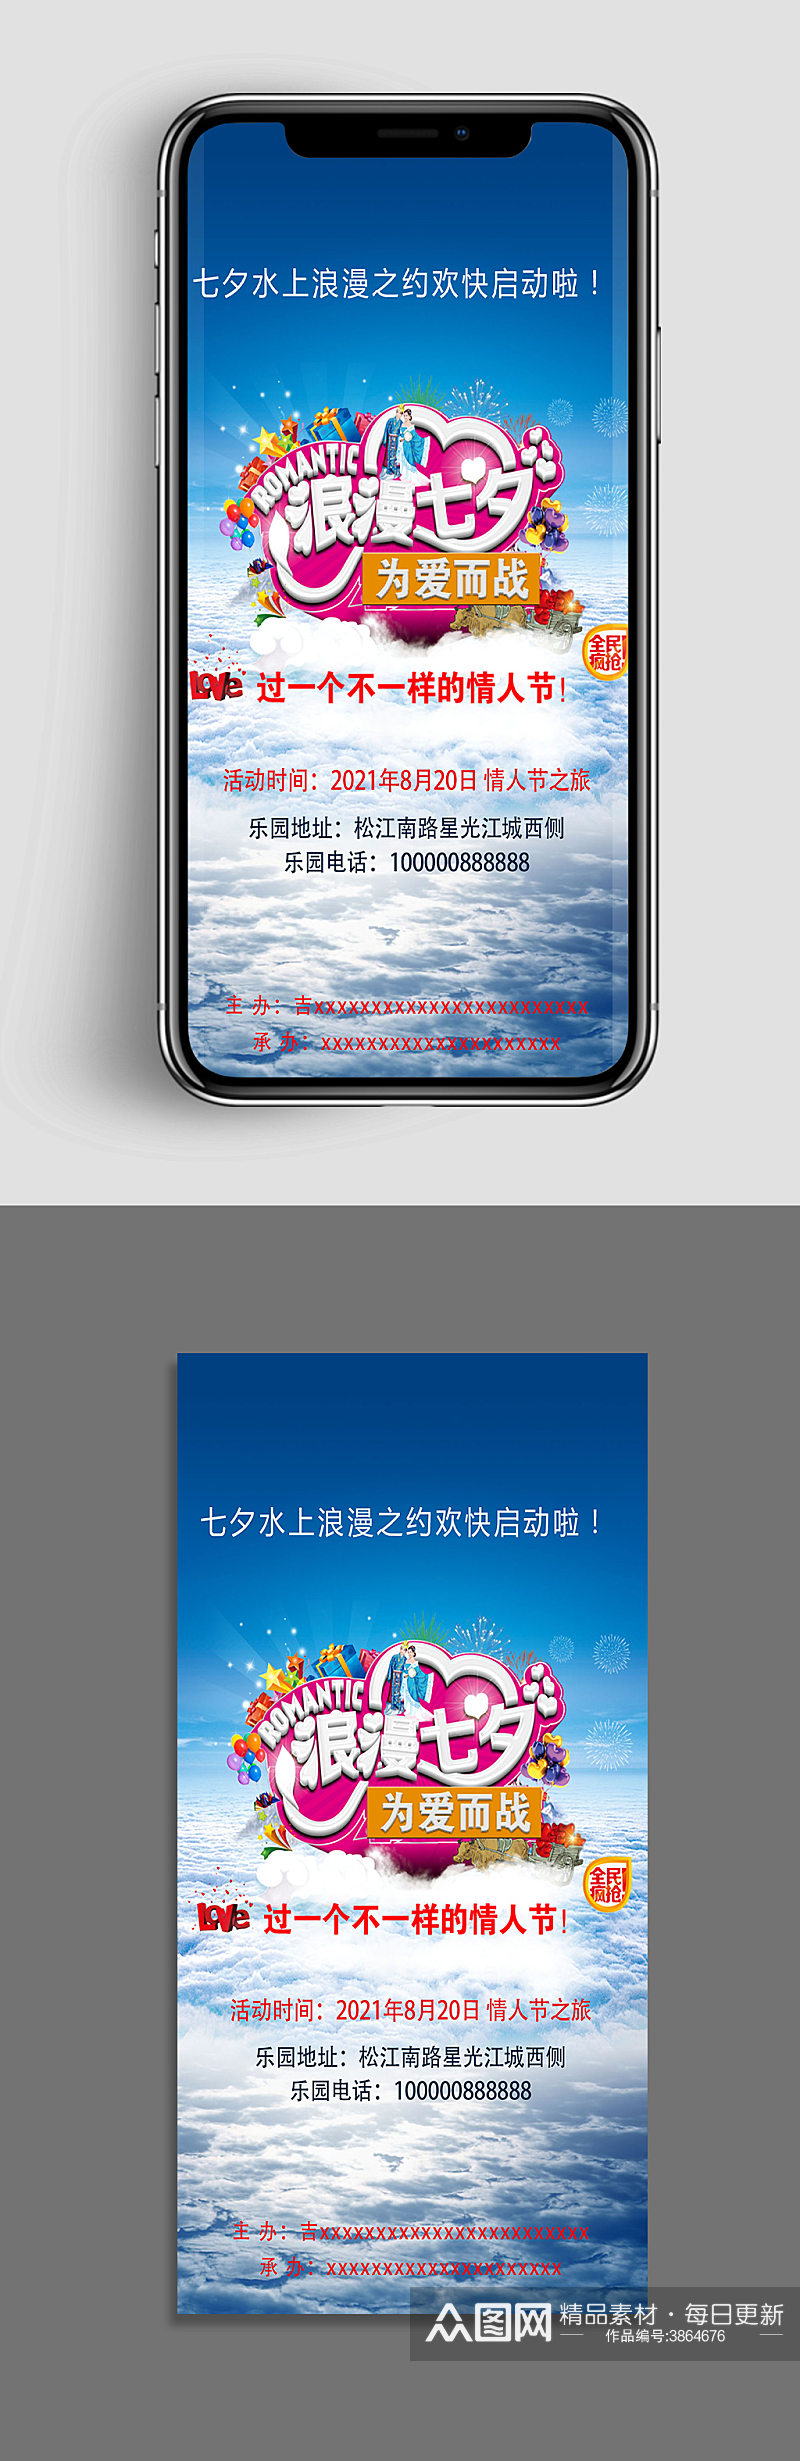 七夕情人节水上乐园室外活动app手机海报素材